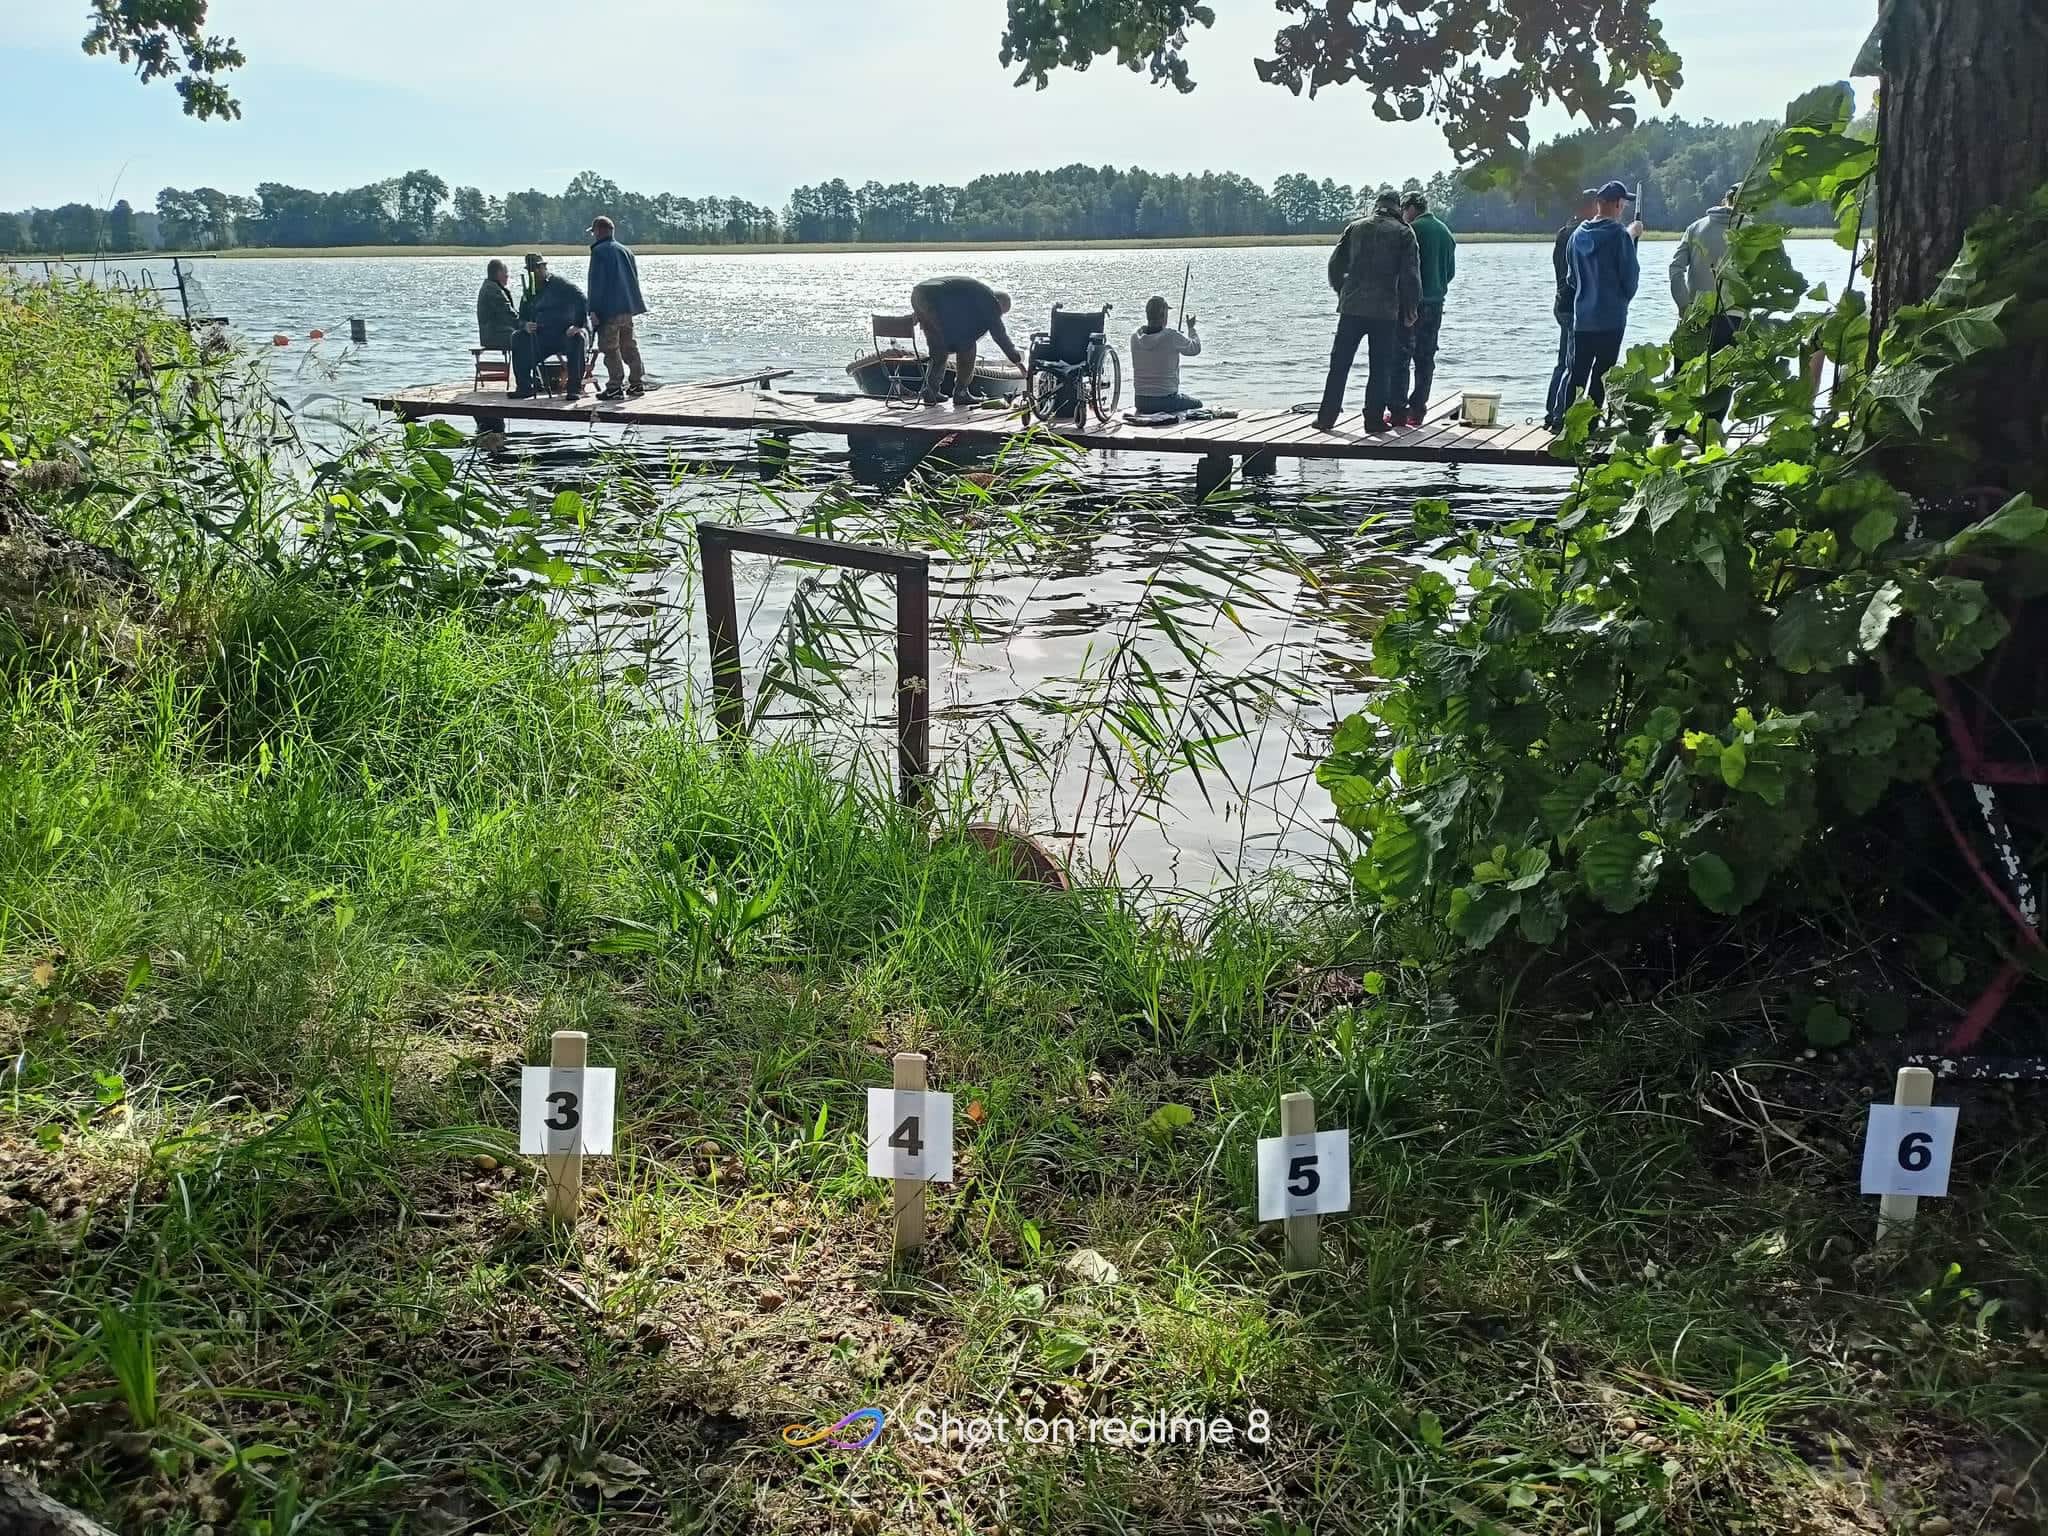 Dziesięć osób przebywających na pomoście, przed nimi jezioro i odbijające się słońce. Jest jasno. Za nimi woda oraz zielona trawa i powbijane tabliczki z numerami startujących 3,4,5,6.